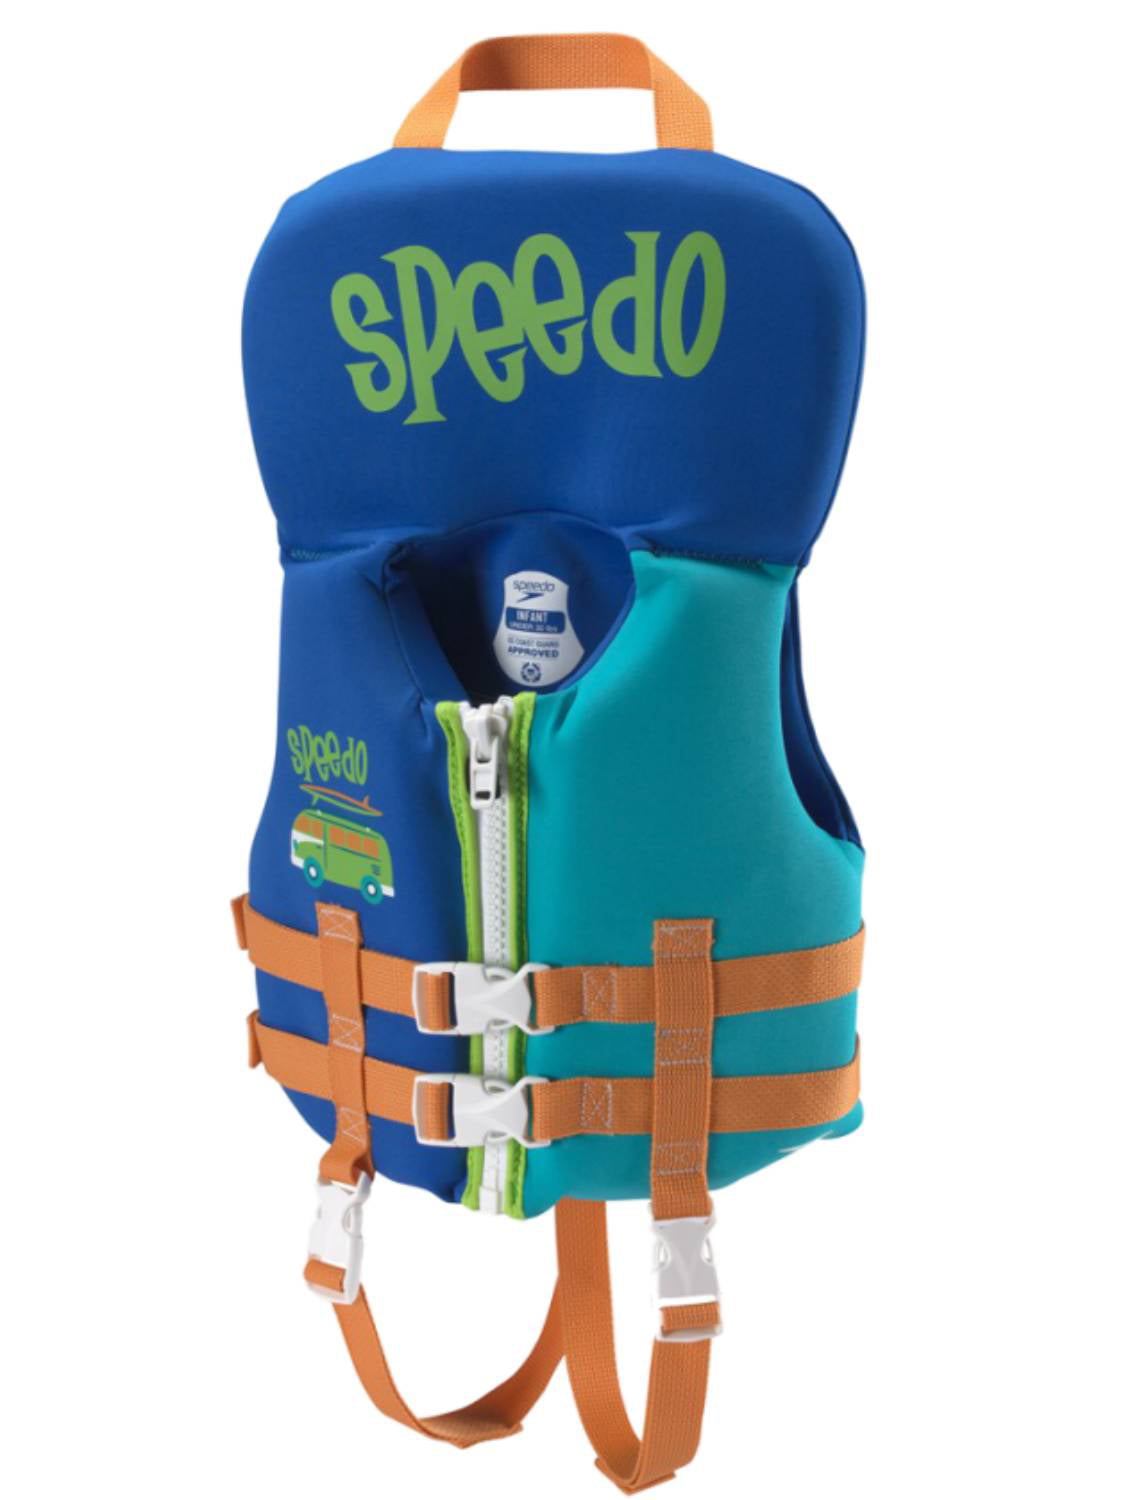 Speedo Life Vest Infant | vlr.eng.br